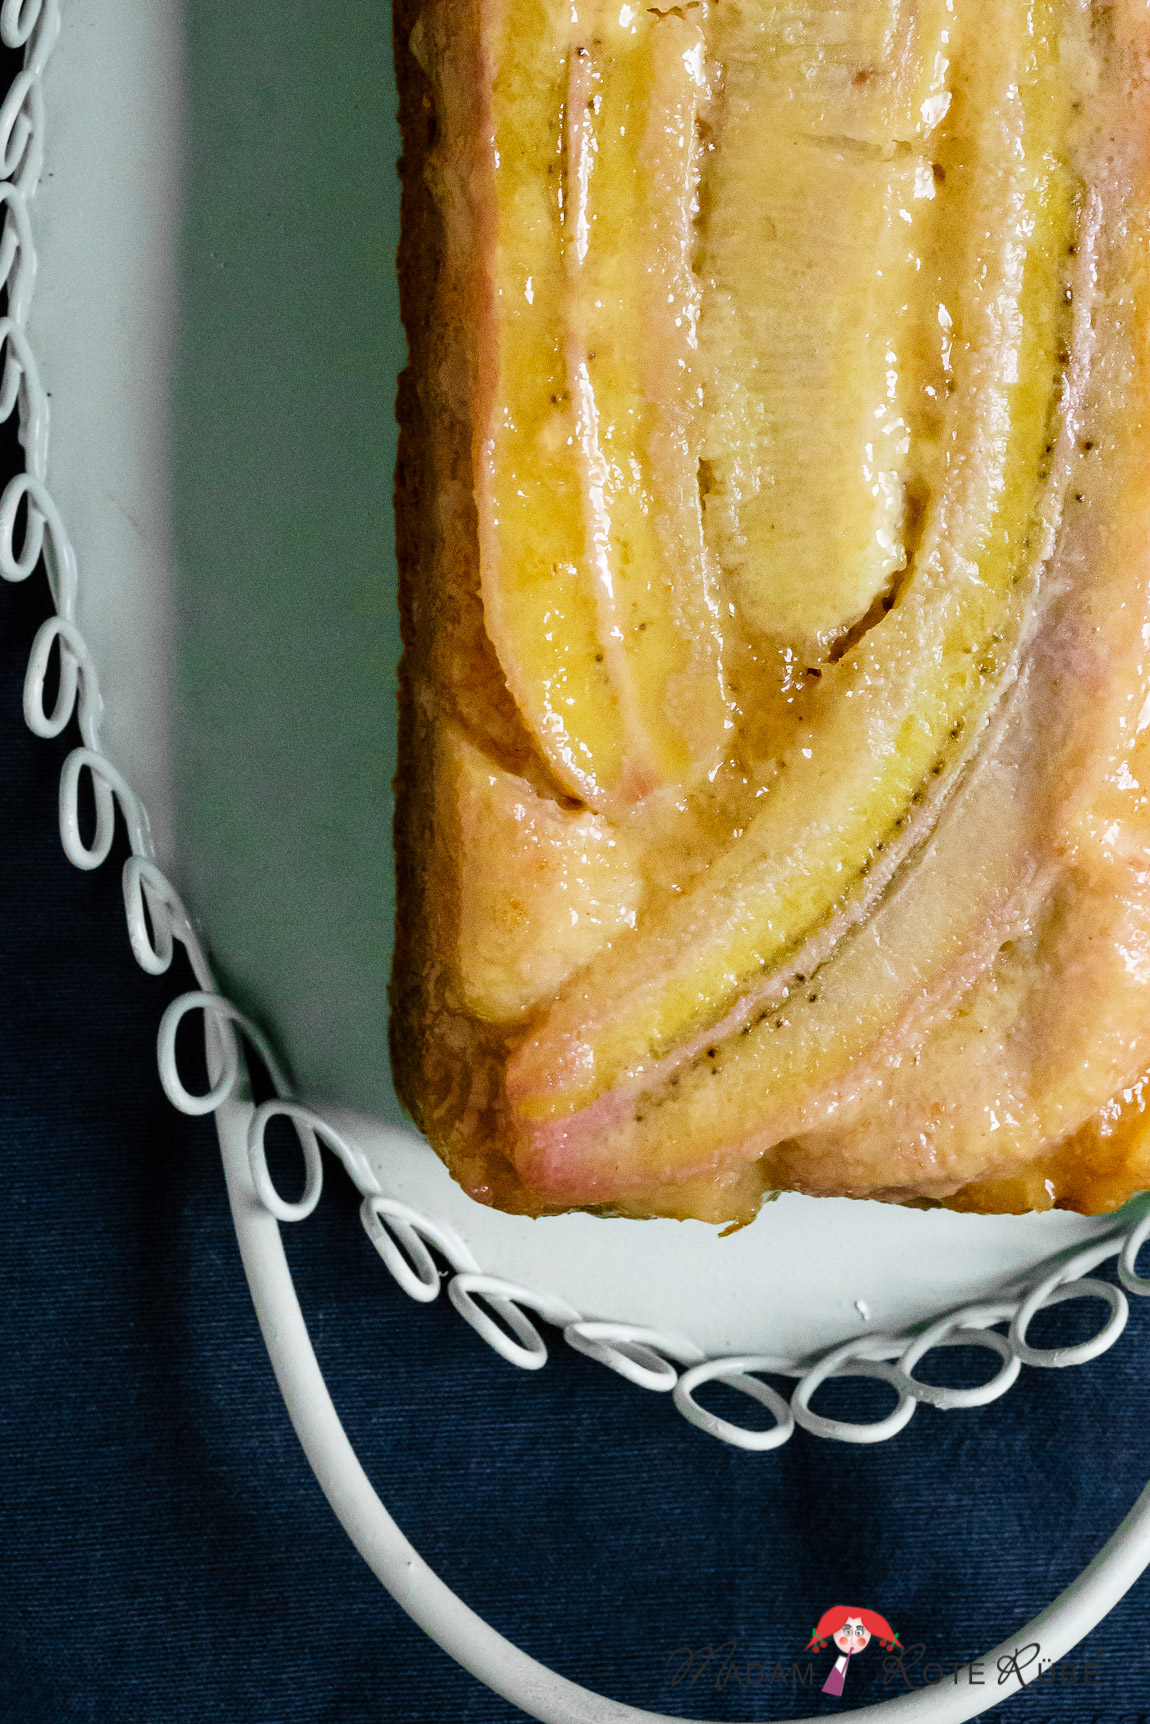 Madam Rote Rübe - Karamellisierter Honig-Bananen-Kuchen mit Dinkelvollkornmehl als Upside-Down